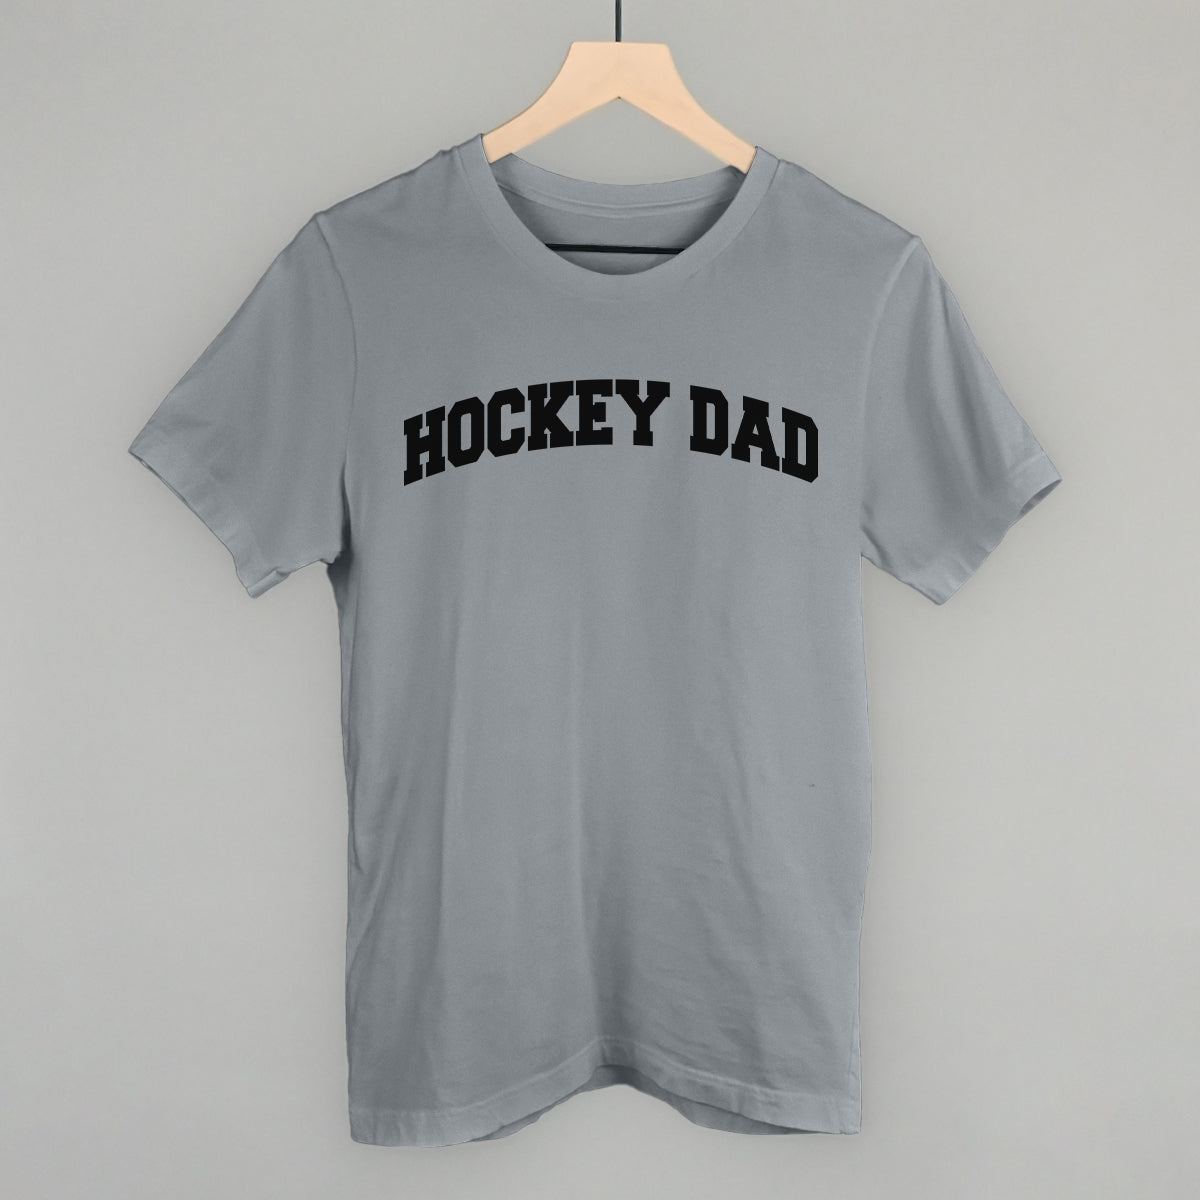 Hockey Dad (Collegiate)